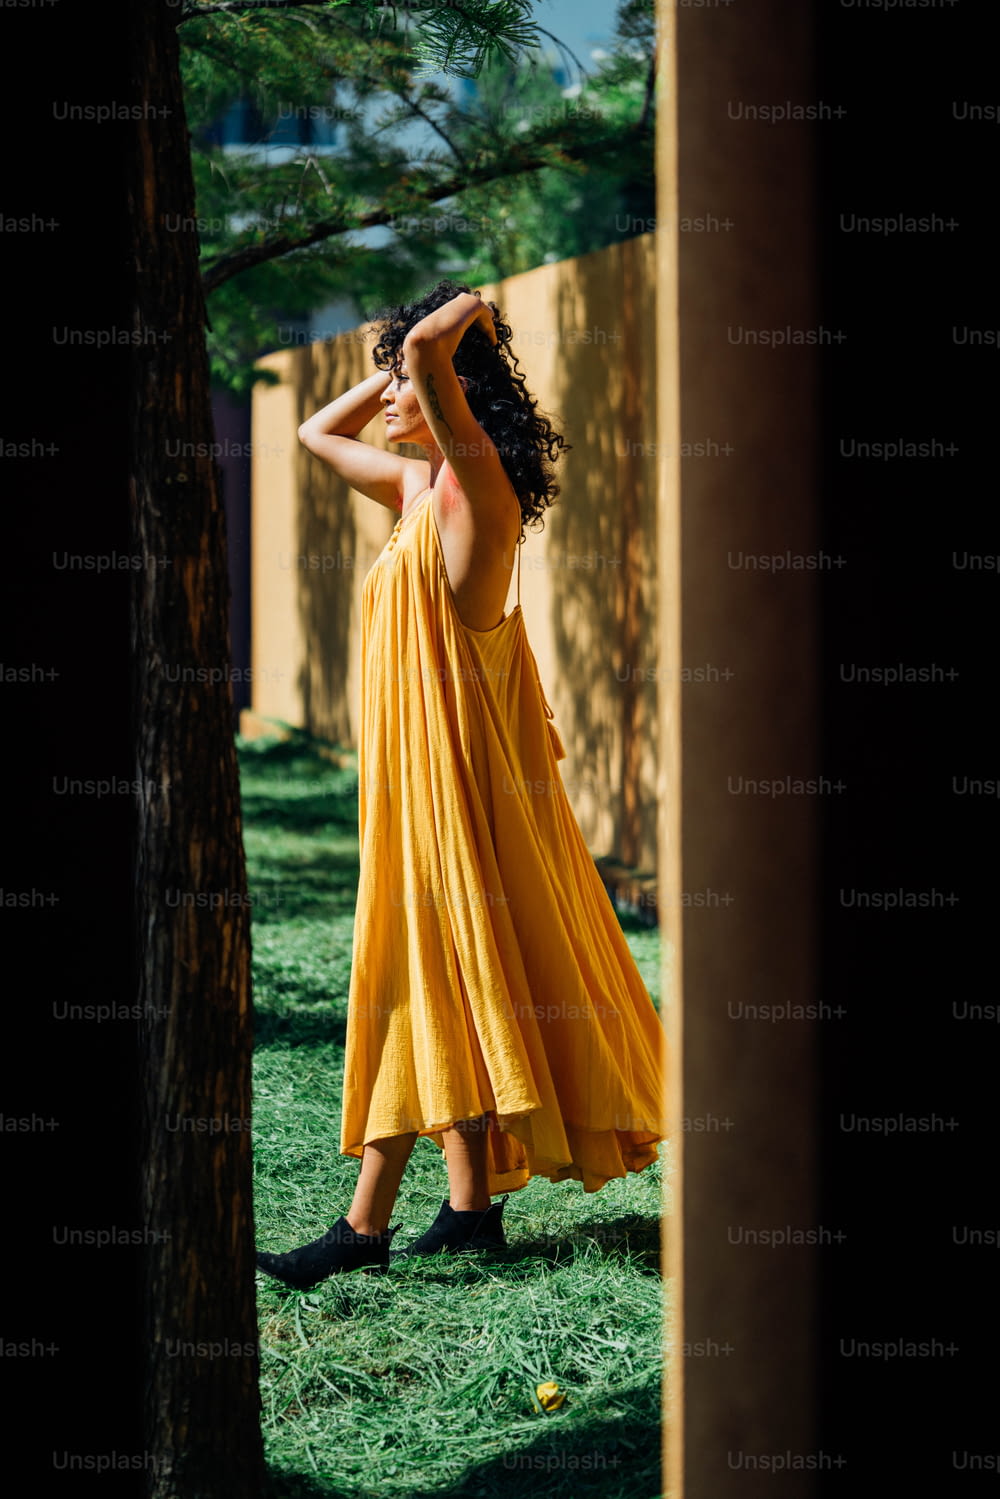 풀밭에 서 있는 노란 드레스를 입은 여자